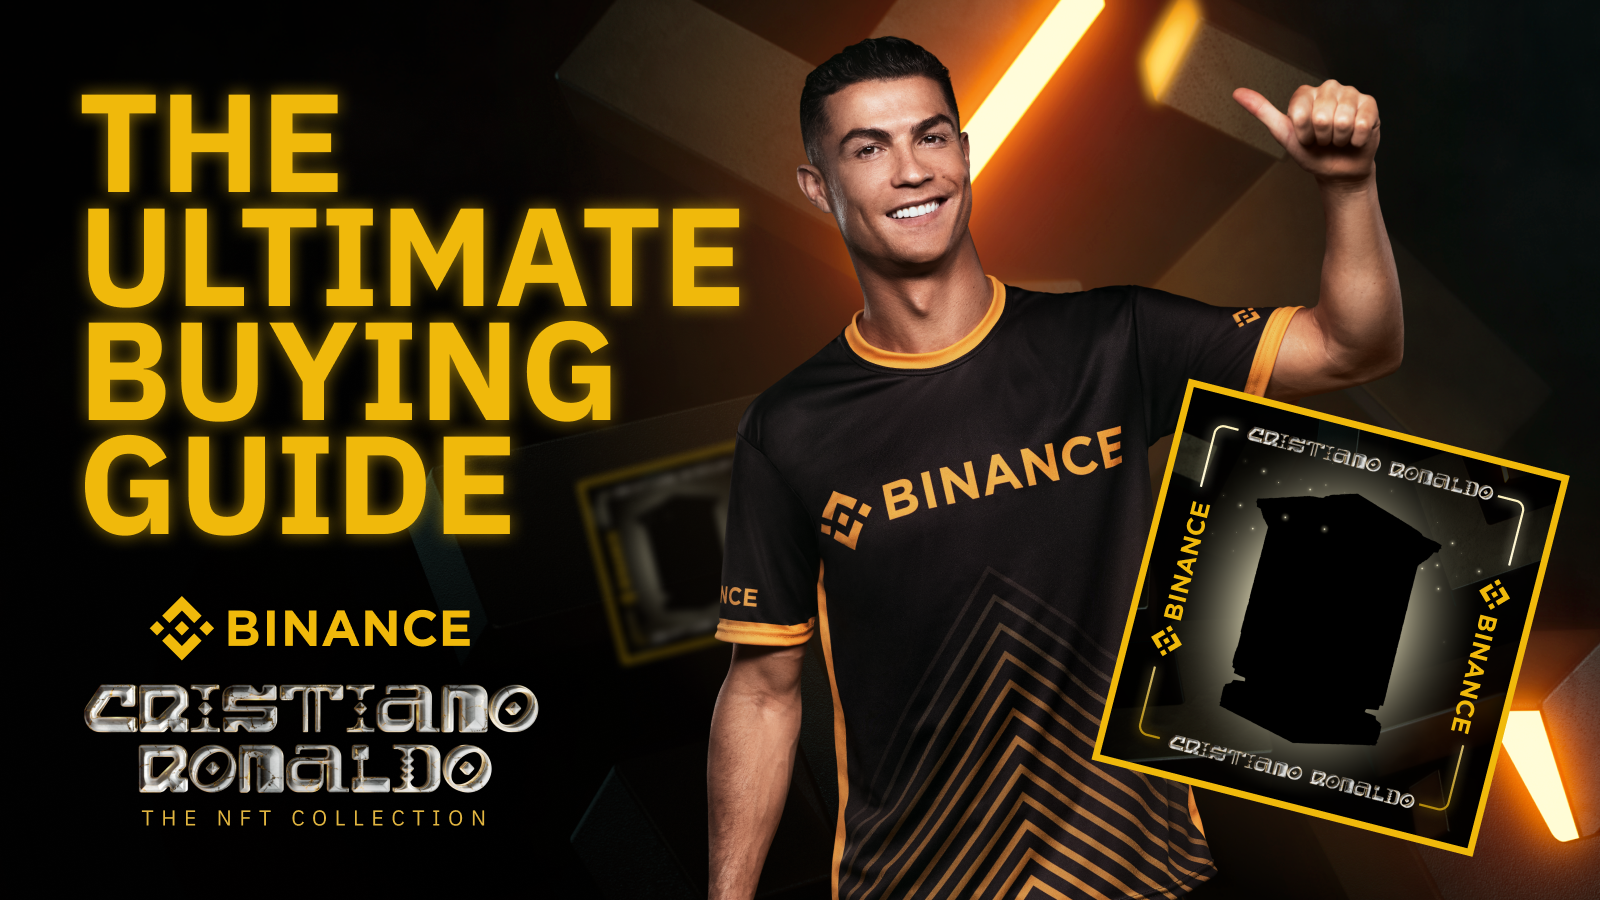 Ο Cristiano Ronaldo συνεργάστηκε με την Binance για να αποκαλύψει τη συλλογή CR7 NFT